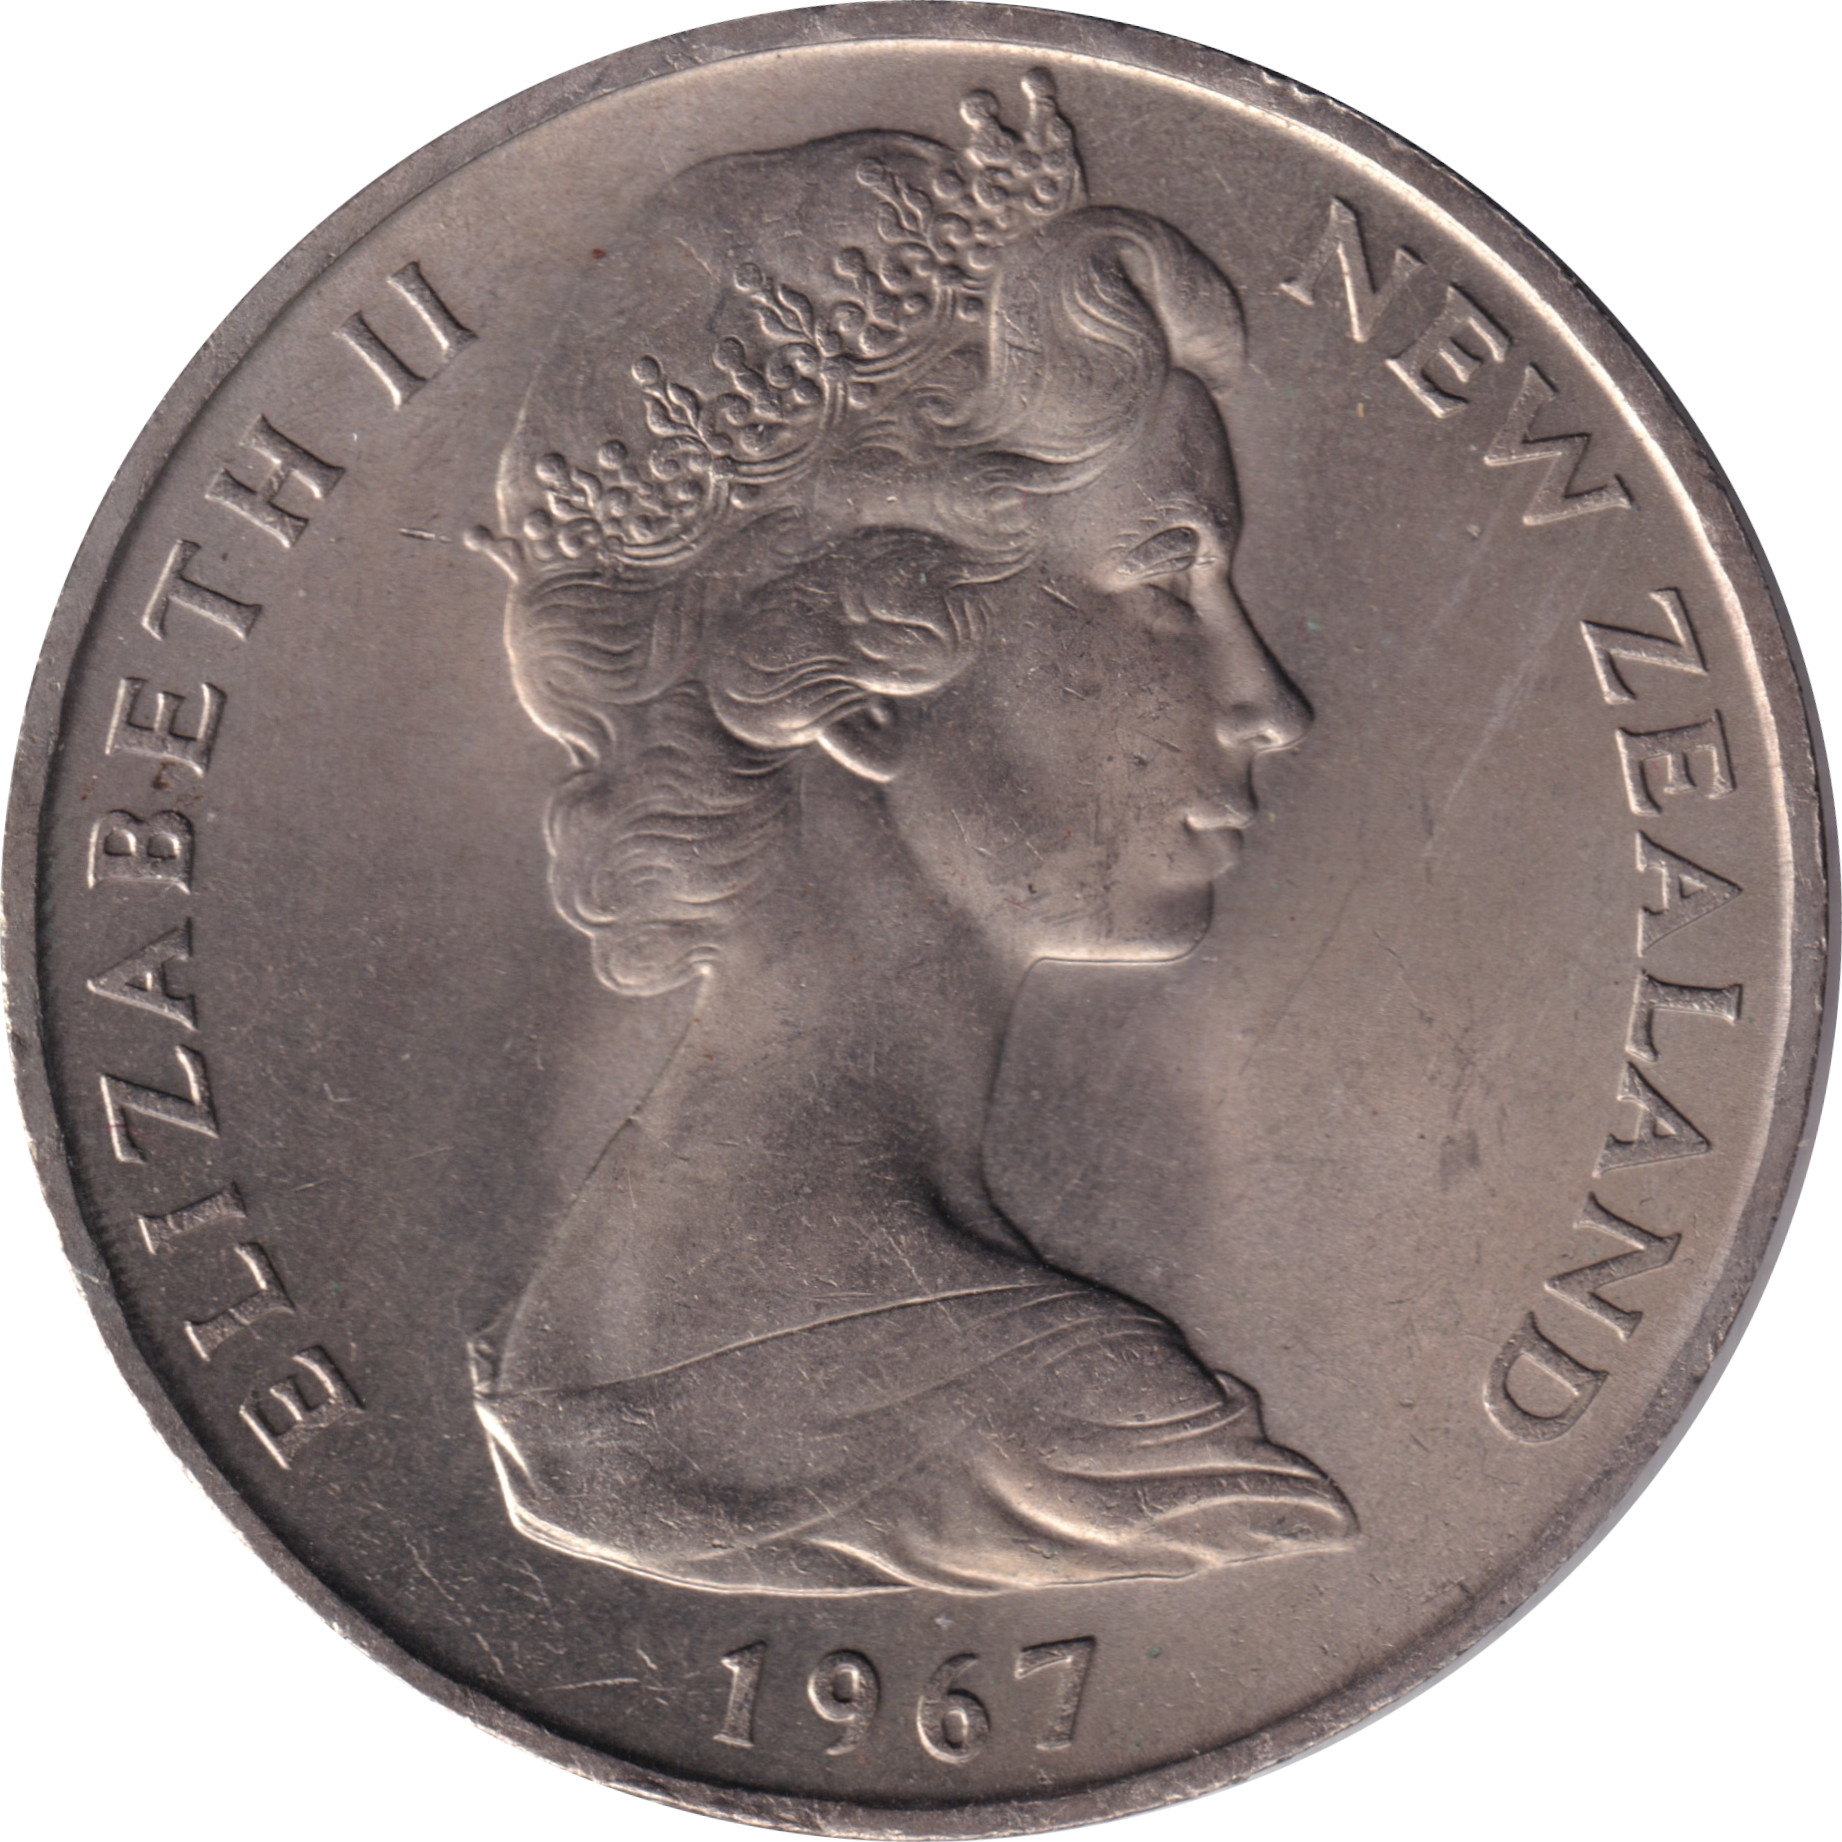 1 dollar - Elizabeth II - Buste jeune